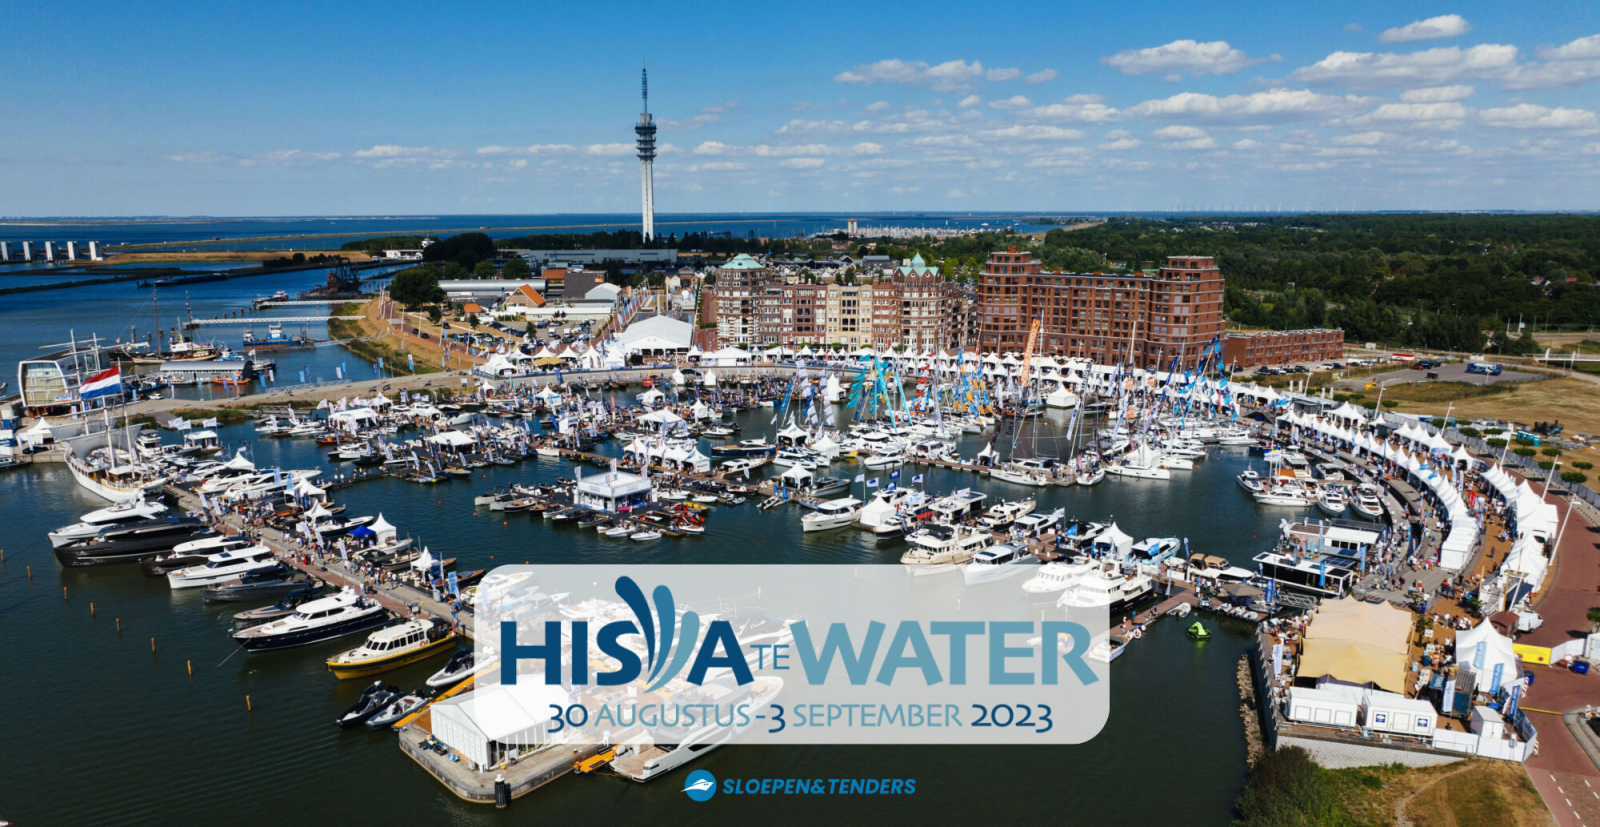 Hiswa te water 2023: Ontdek de botenbeurs in Lelystad!